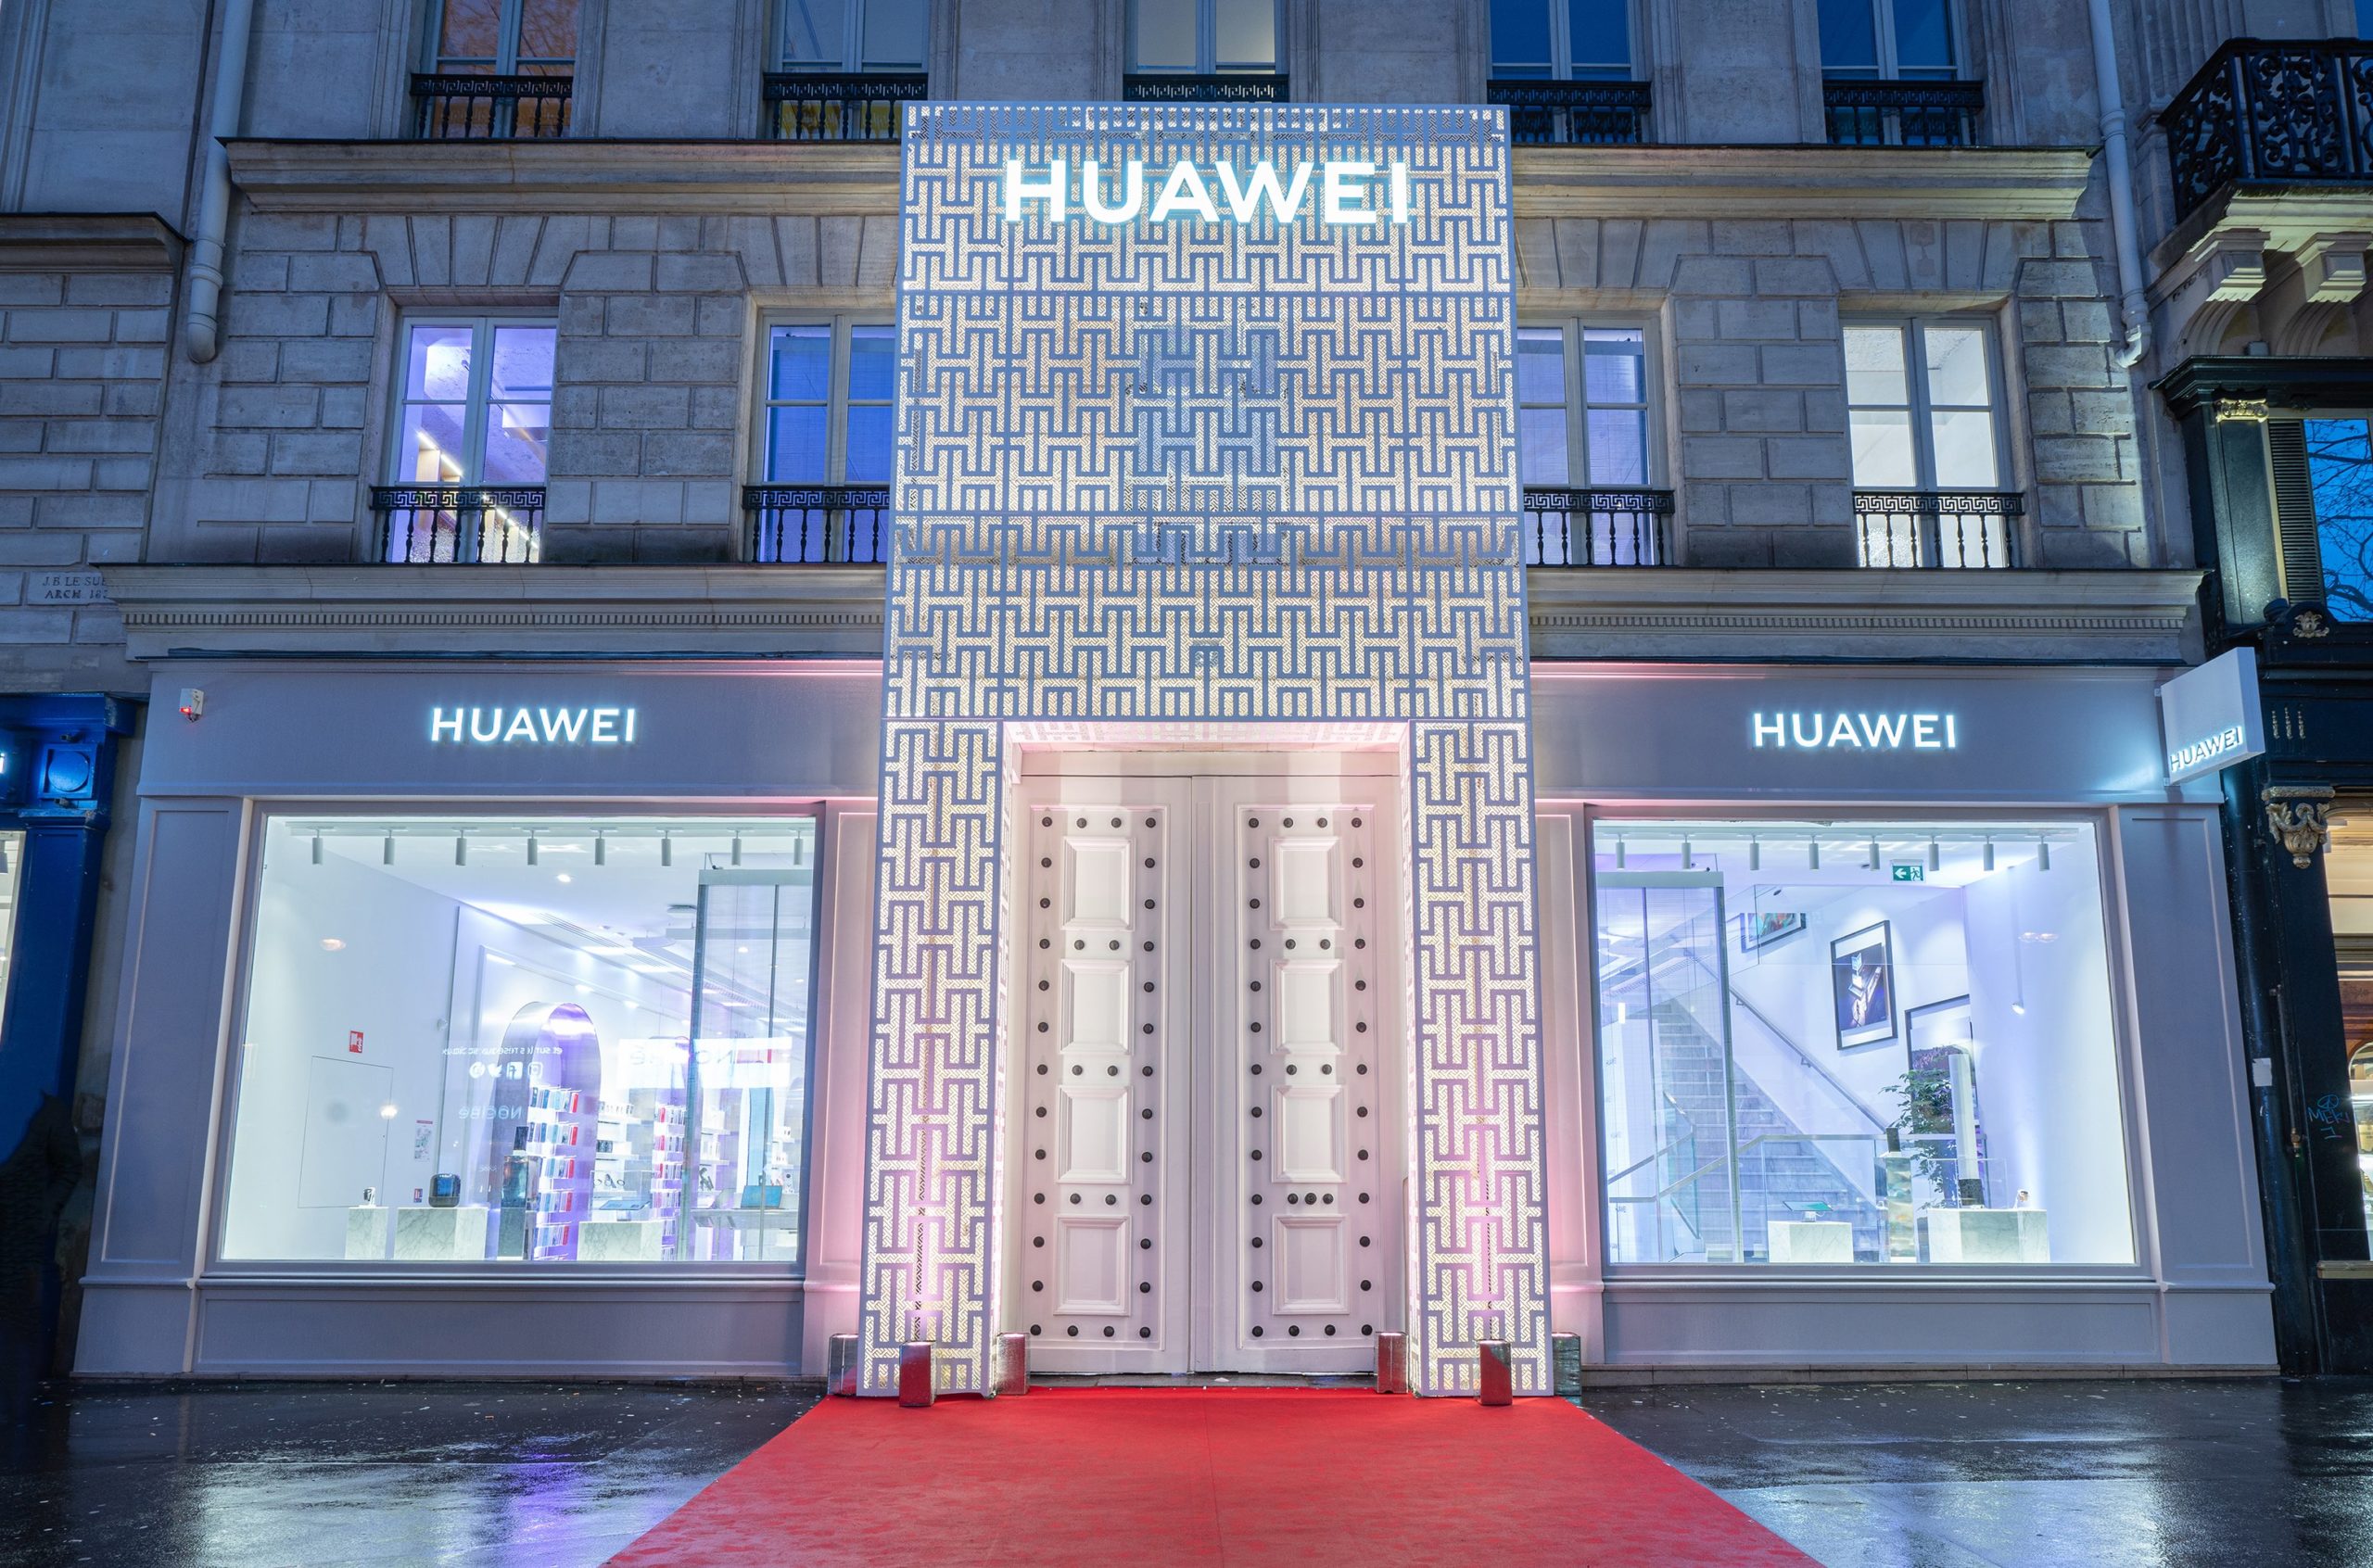 Huawei store